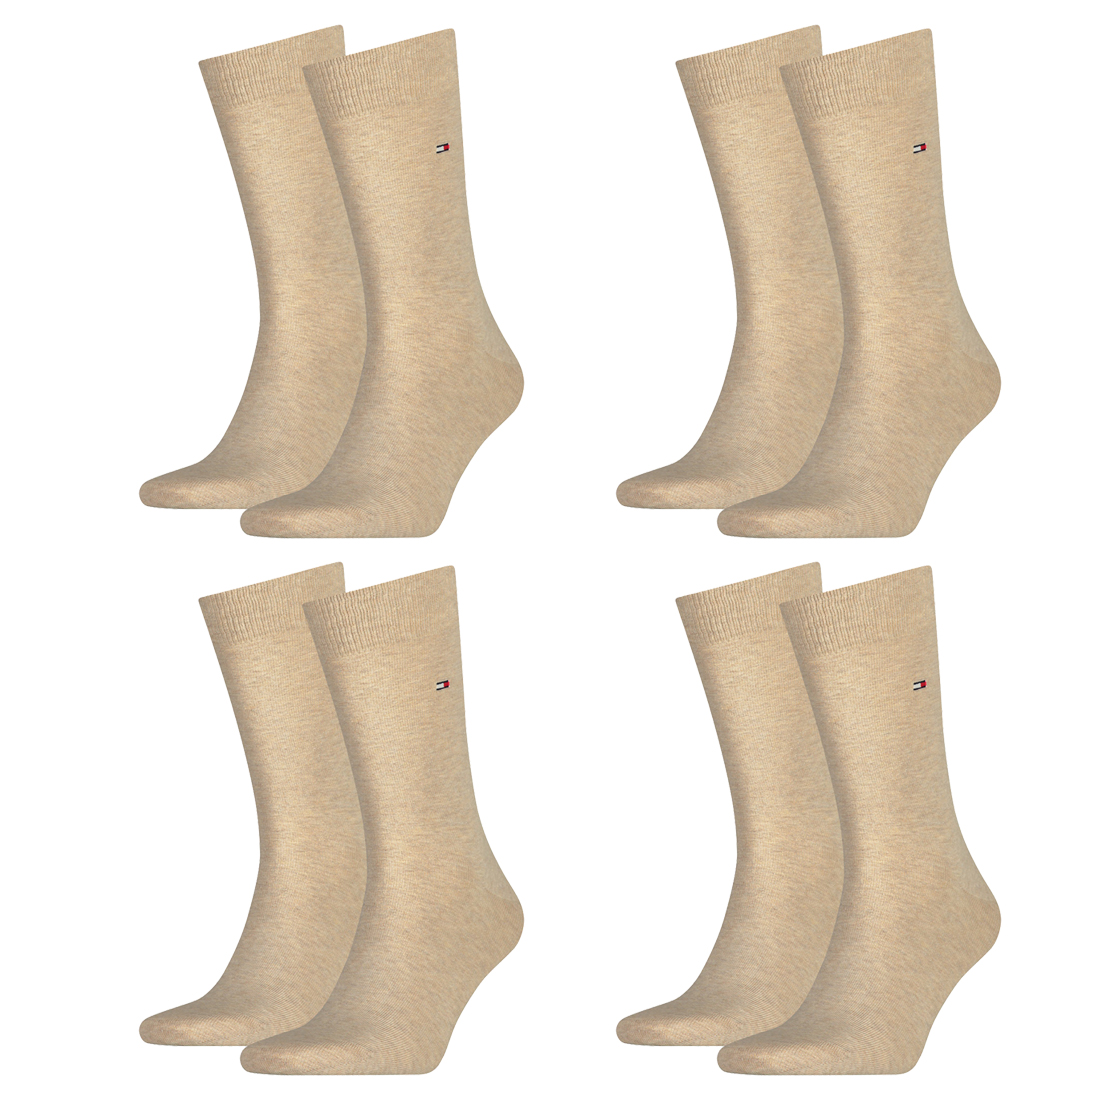 8 Paar TOMMY HILFIGER Classic Socken Gr. 39 - 49 Herren Business Socken 369 - light beige melange, 39-42 von Tommy Hilfiger